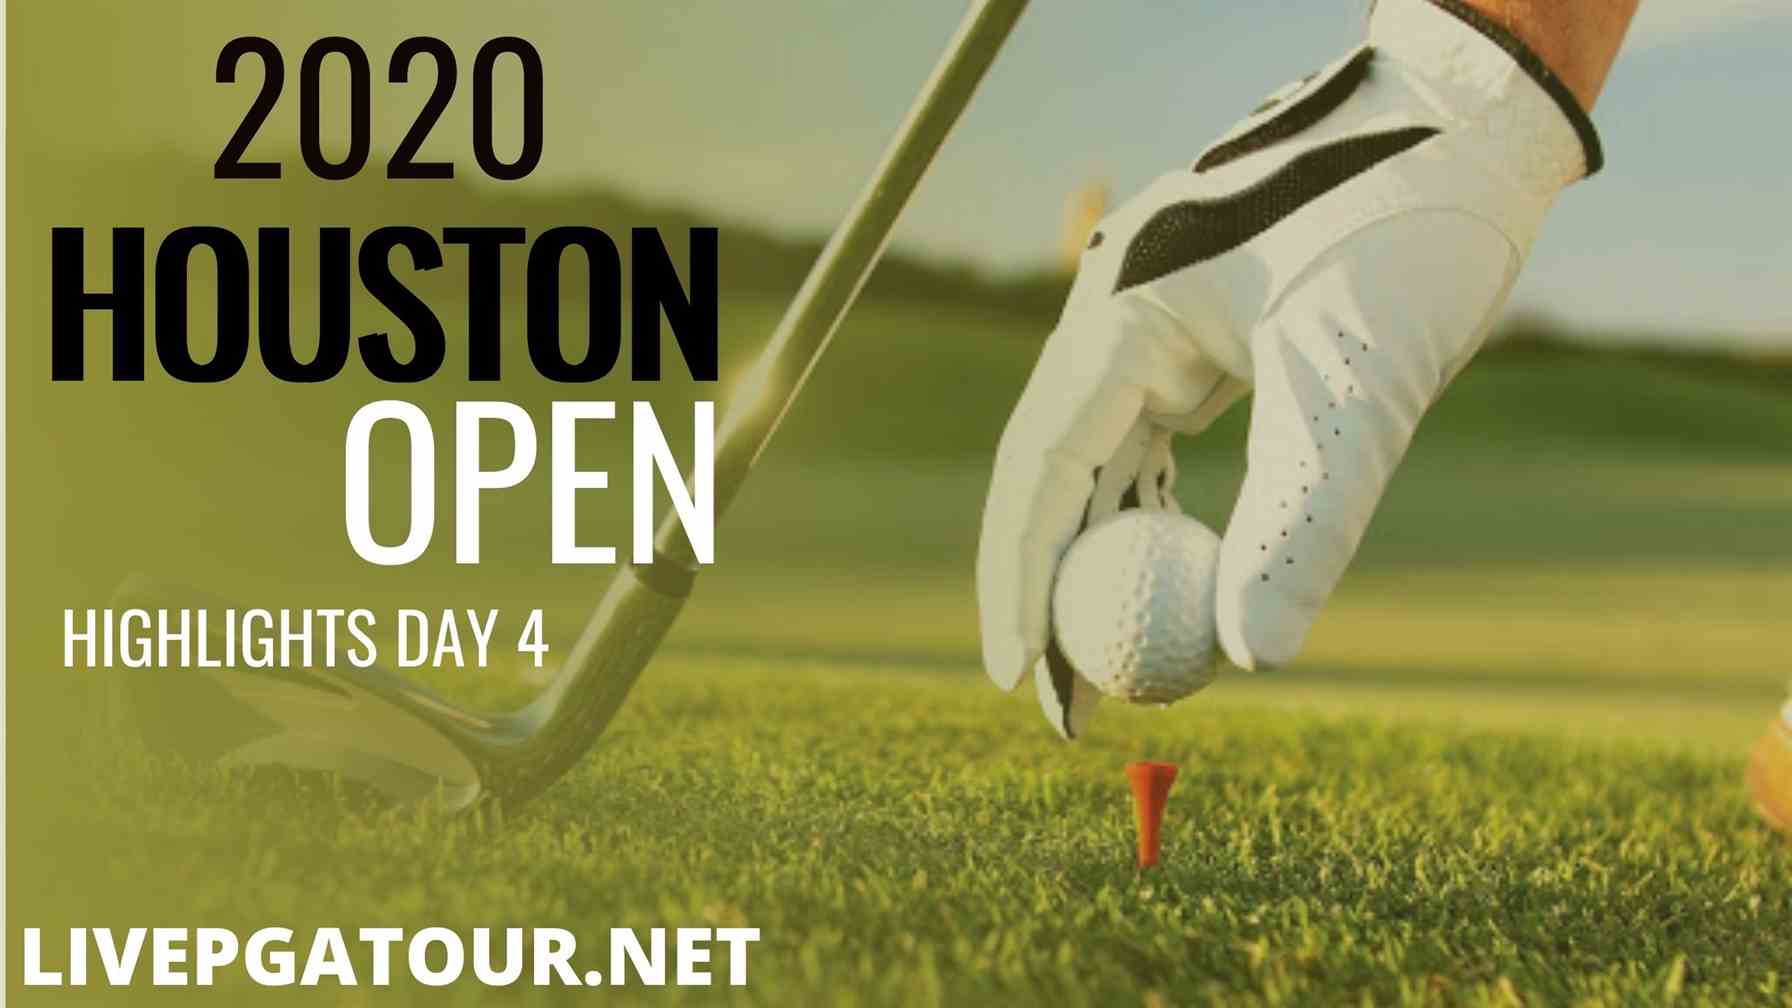 Houston Open PGA Tour Day 4 Highlights 2020